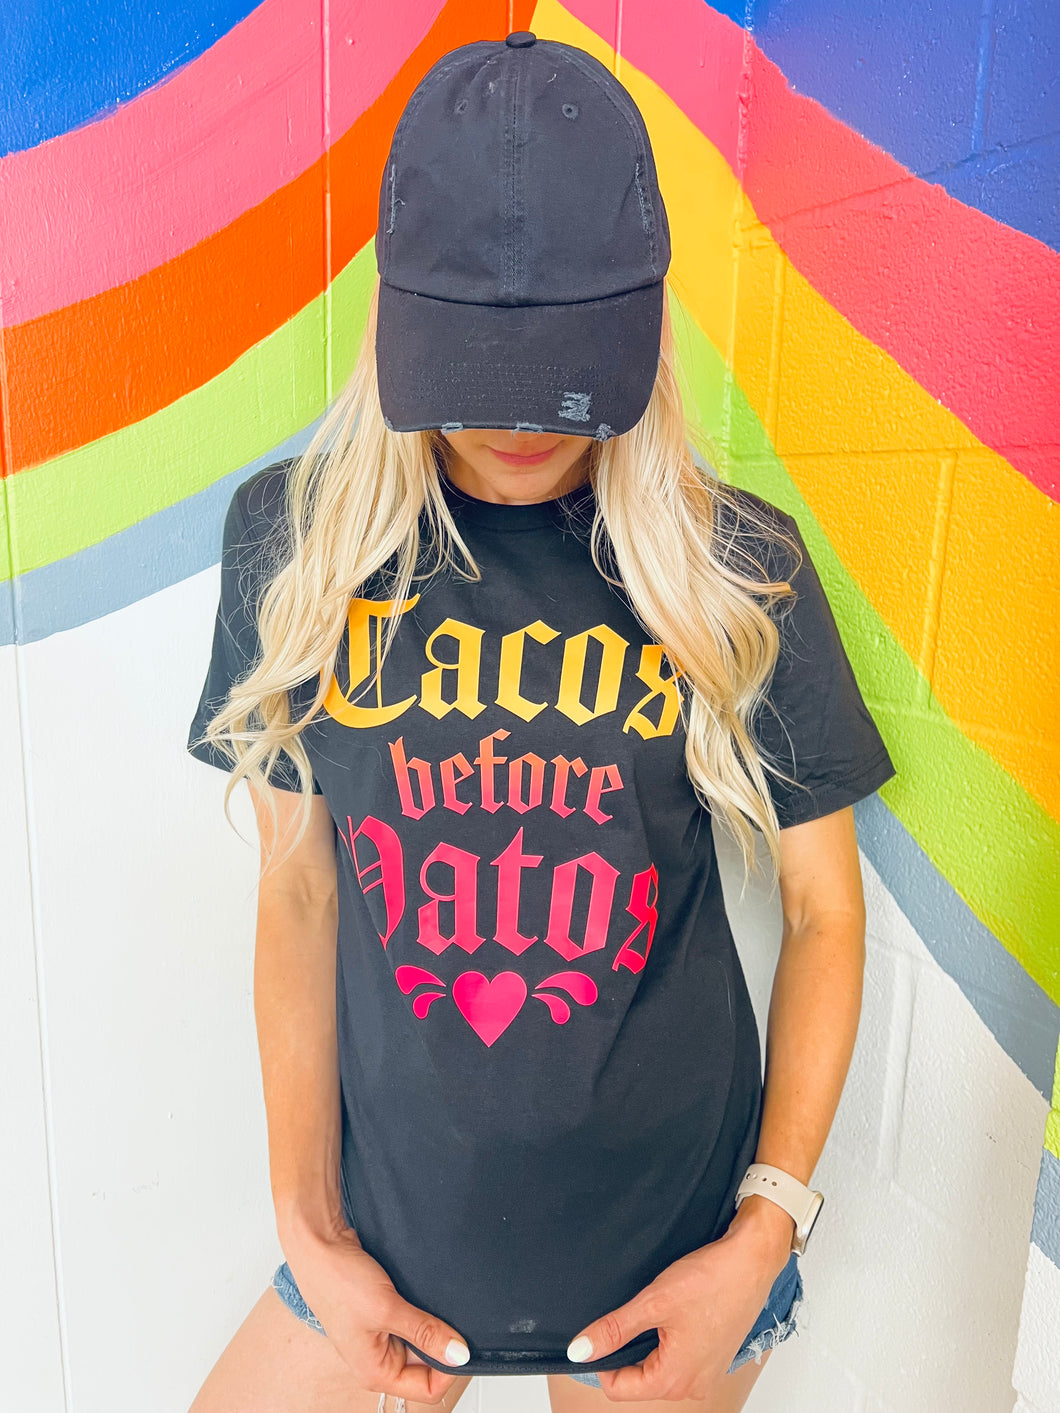 Tacos Before Vatos 🌮